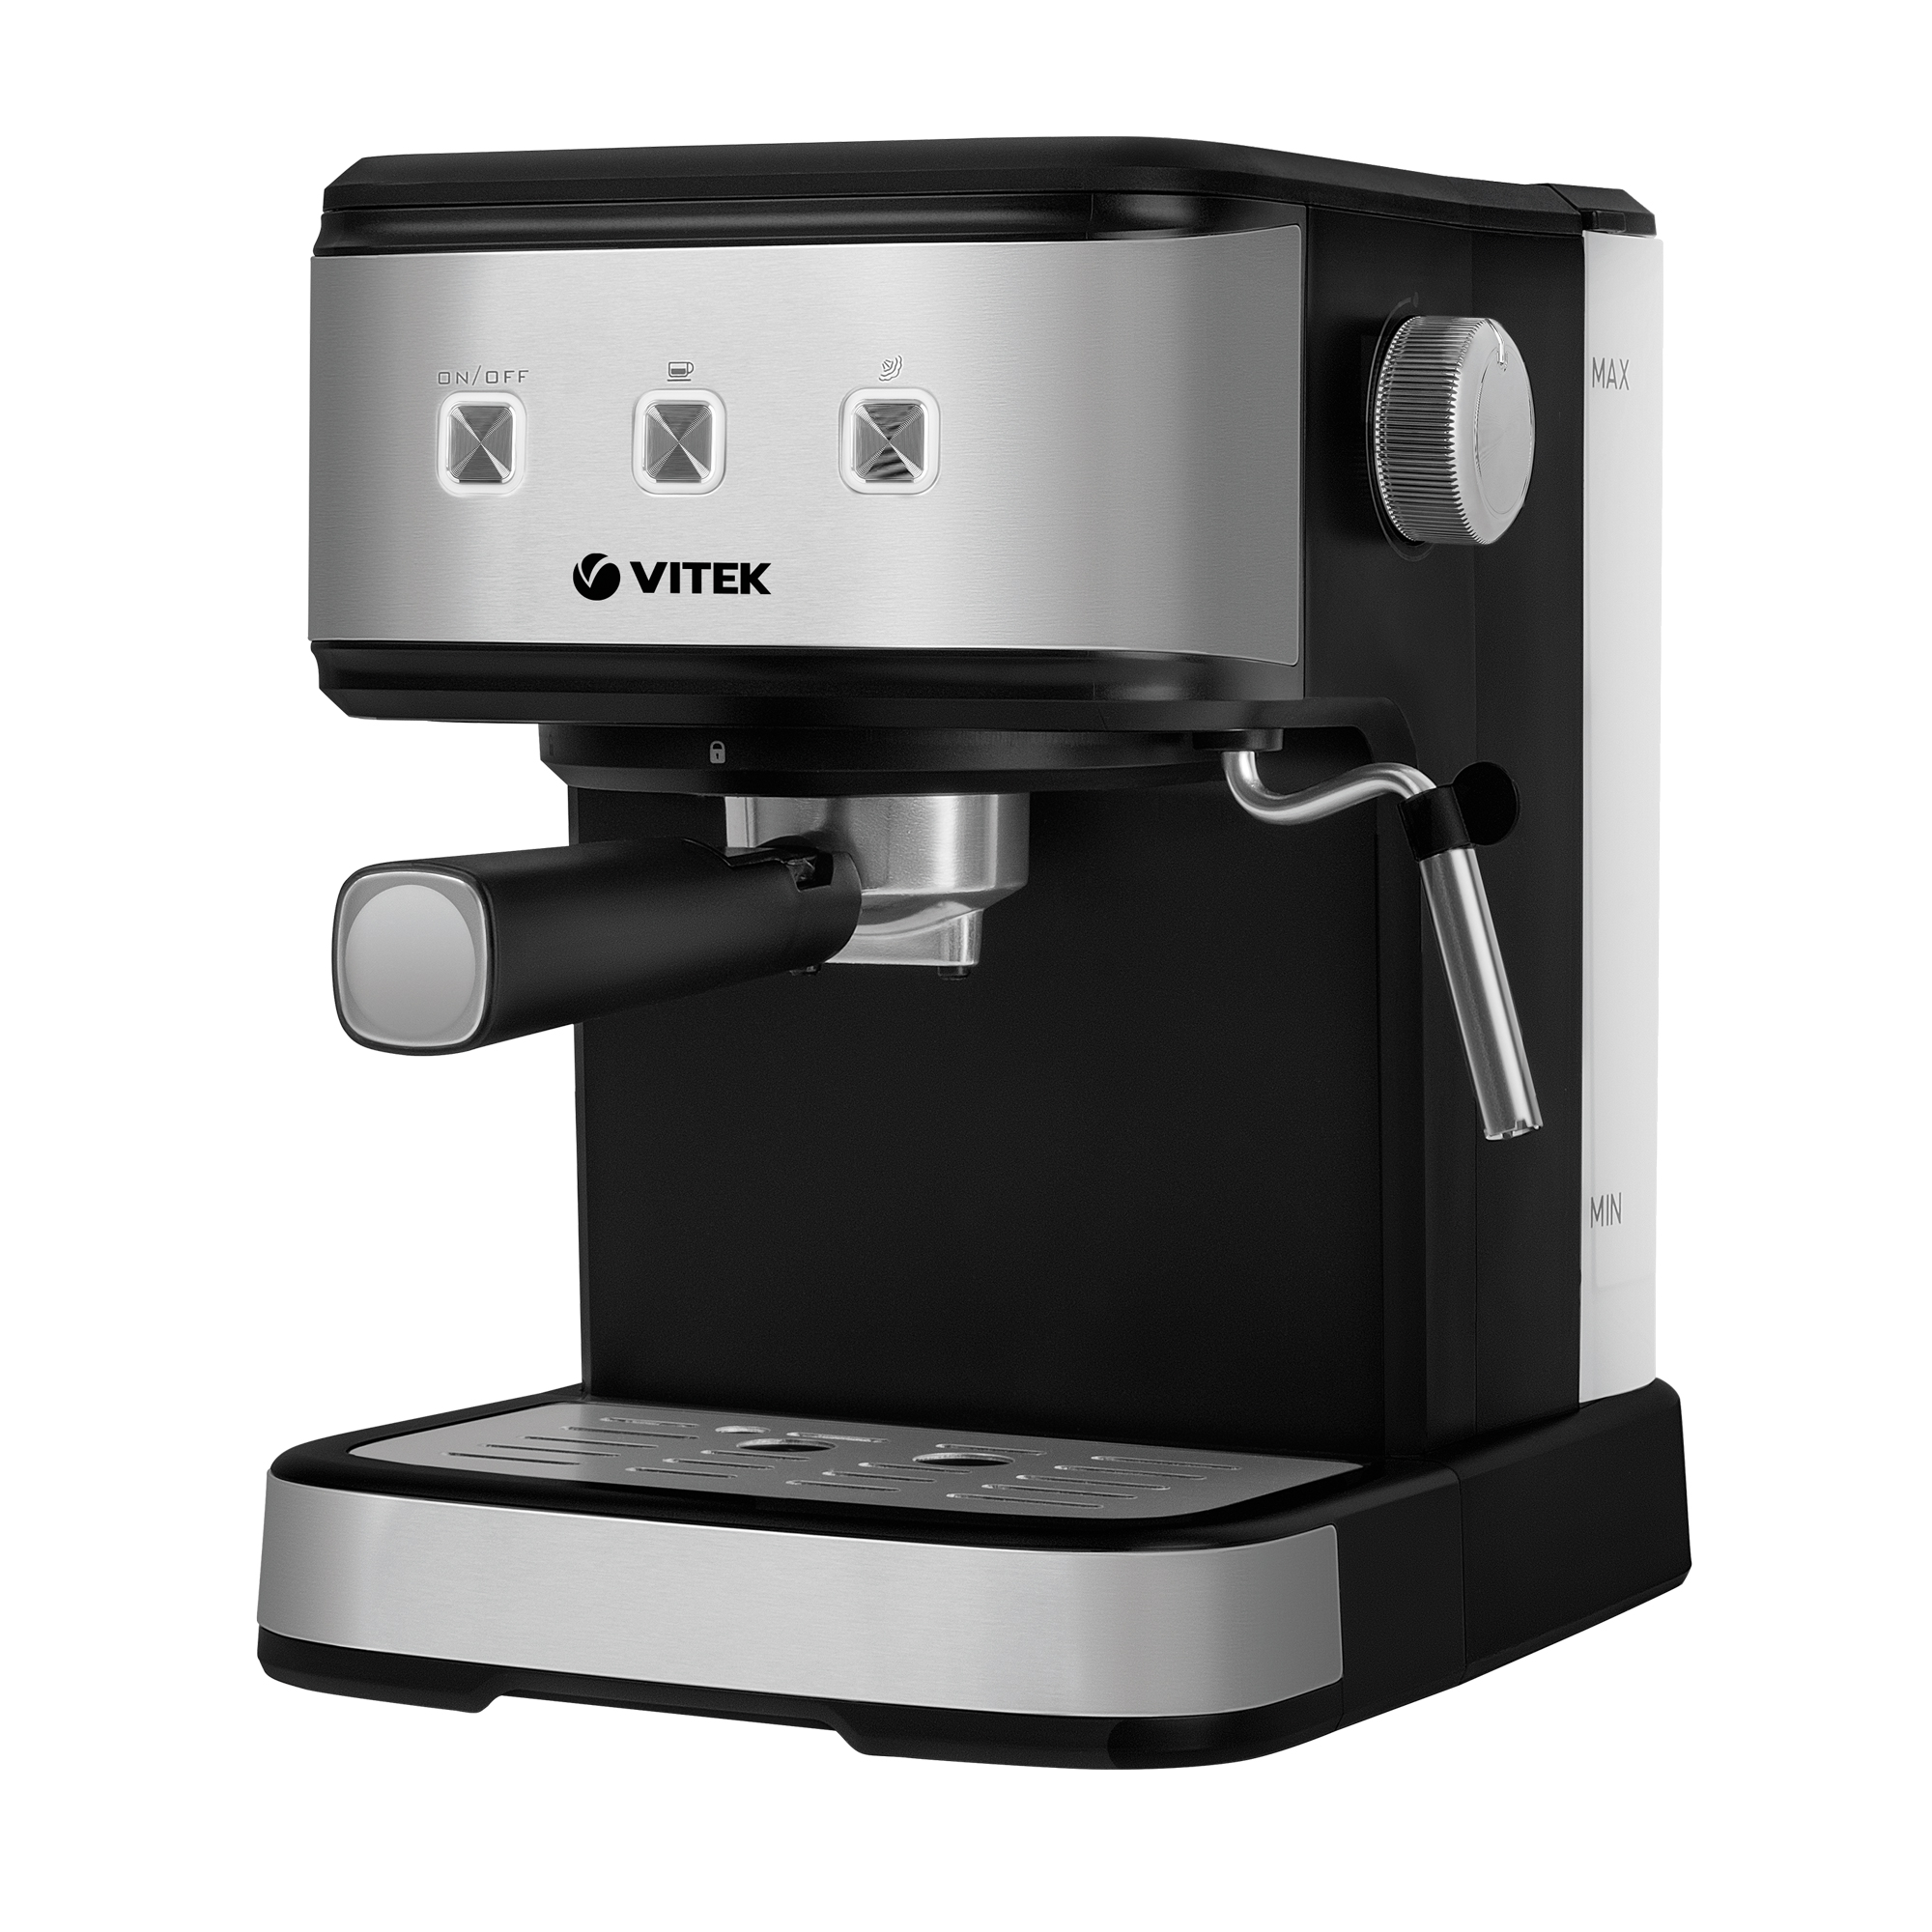 Рожковая кофеварка VITEK VT-8471 серый, черный рожковая кофеварка delonghi ec 885 gy серый серебристый